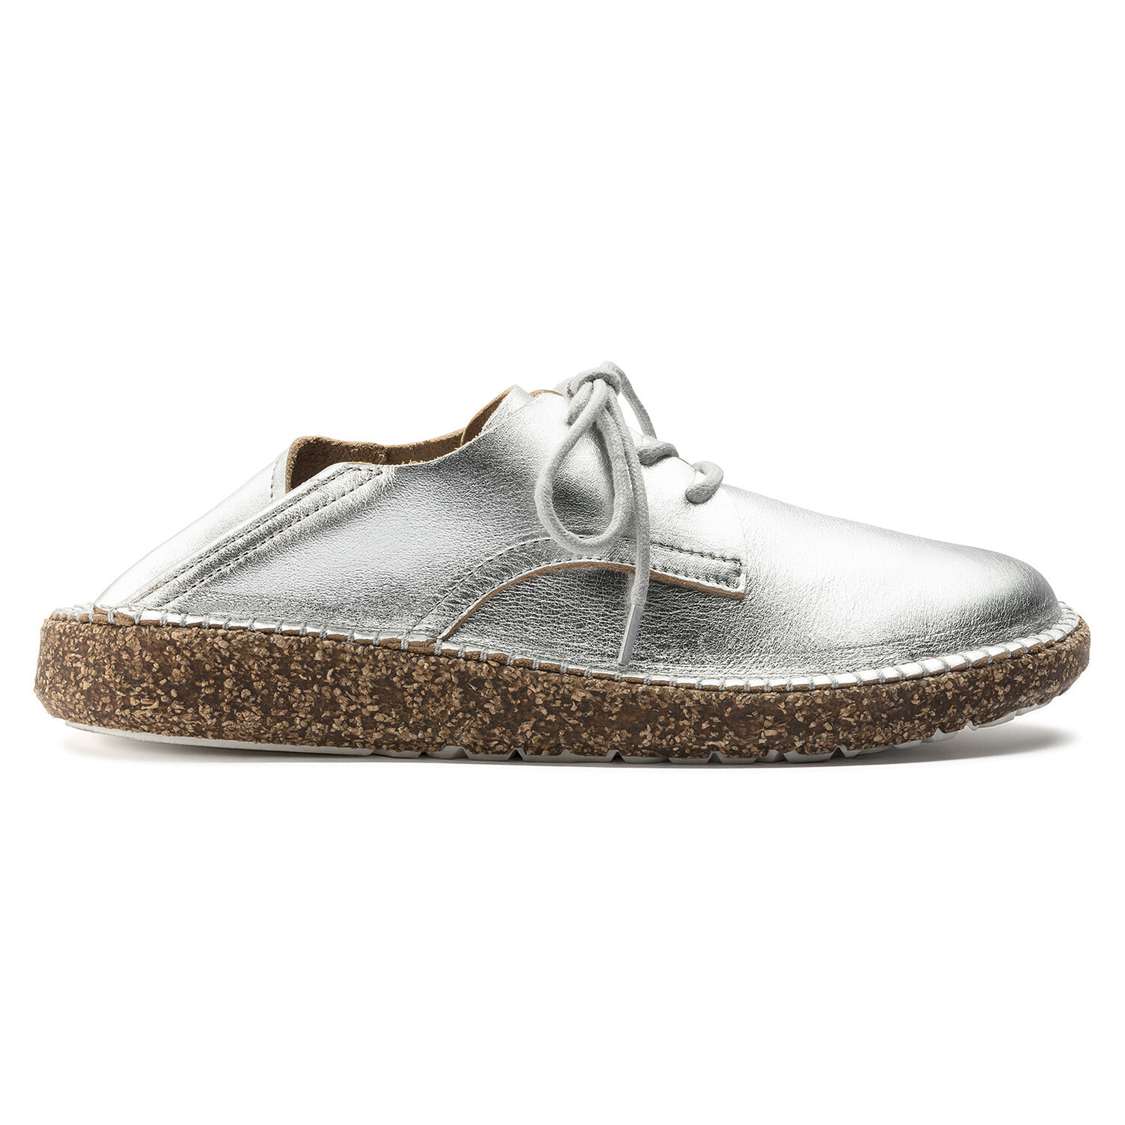 Silver Birkenstock Gary Leather Women's Low Shoes | SiVAj597LYr